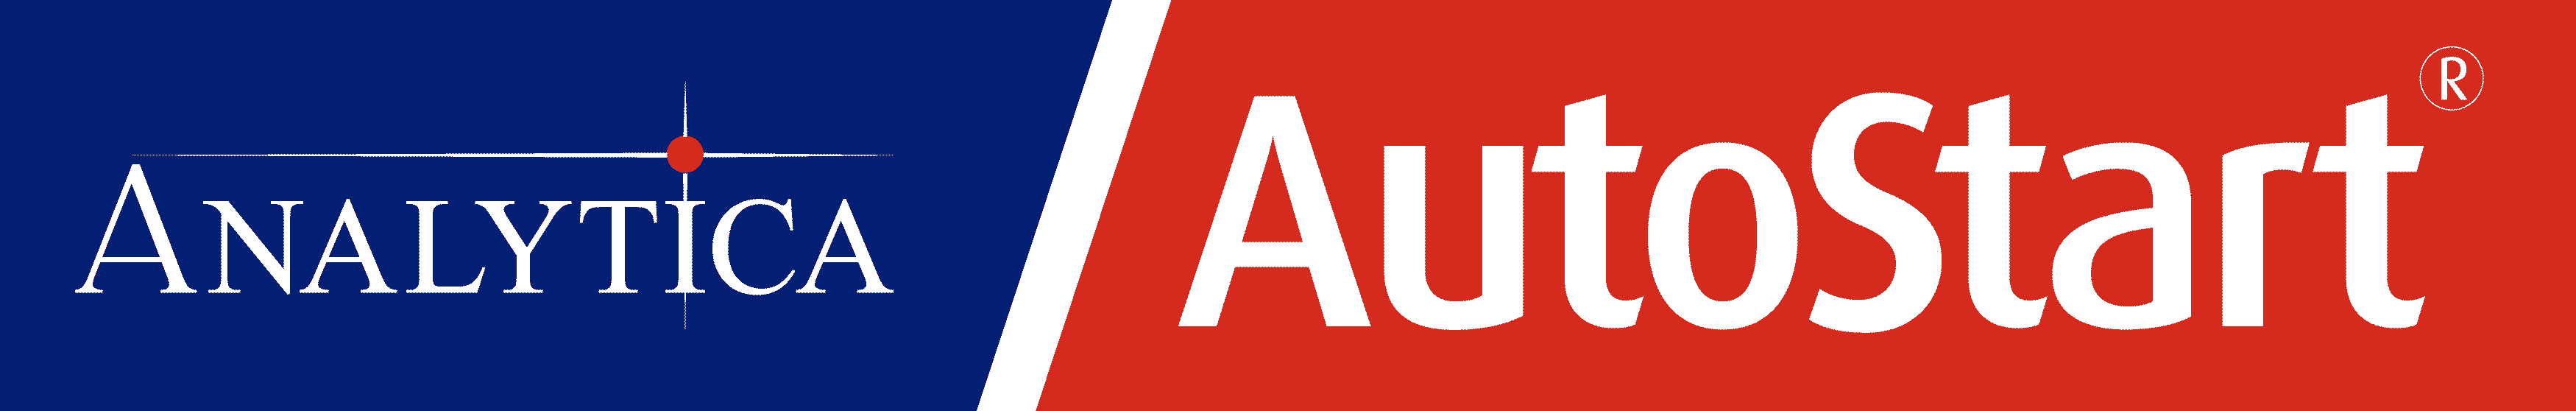 AutoStart